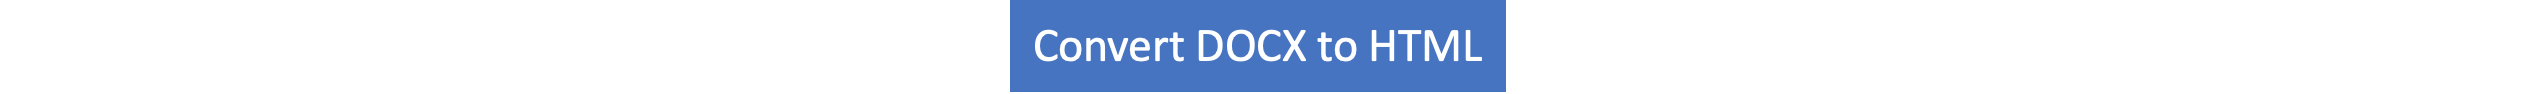 DOCX para HTML